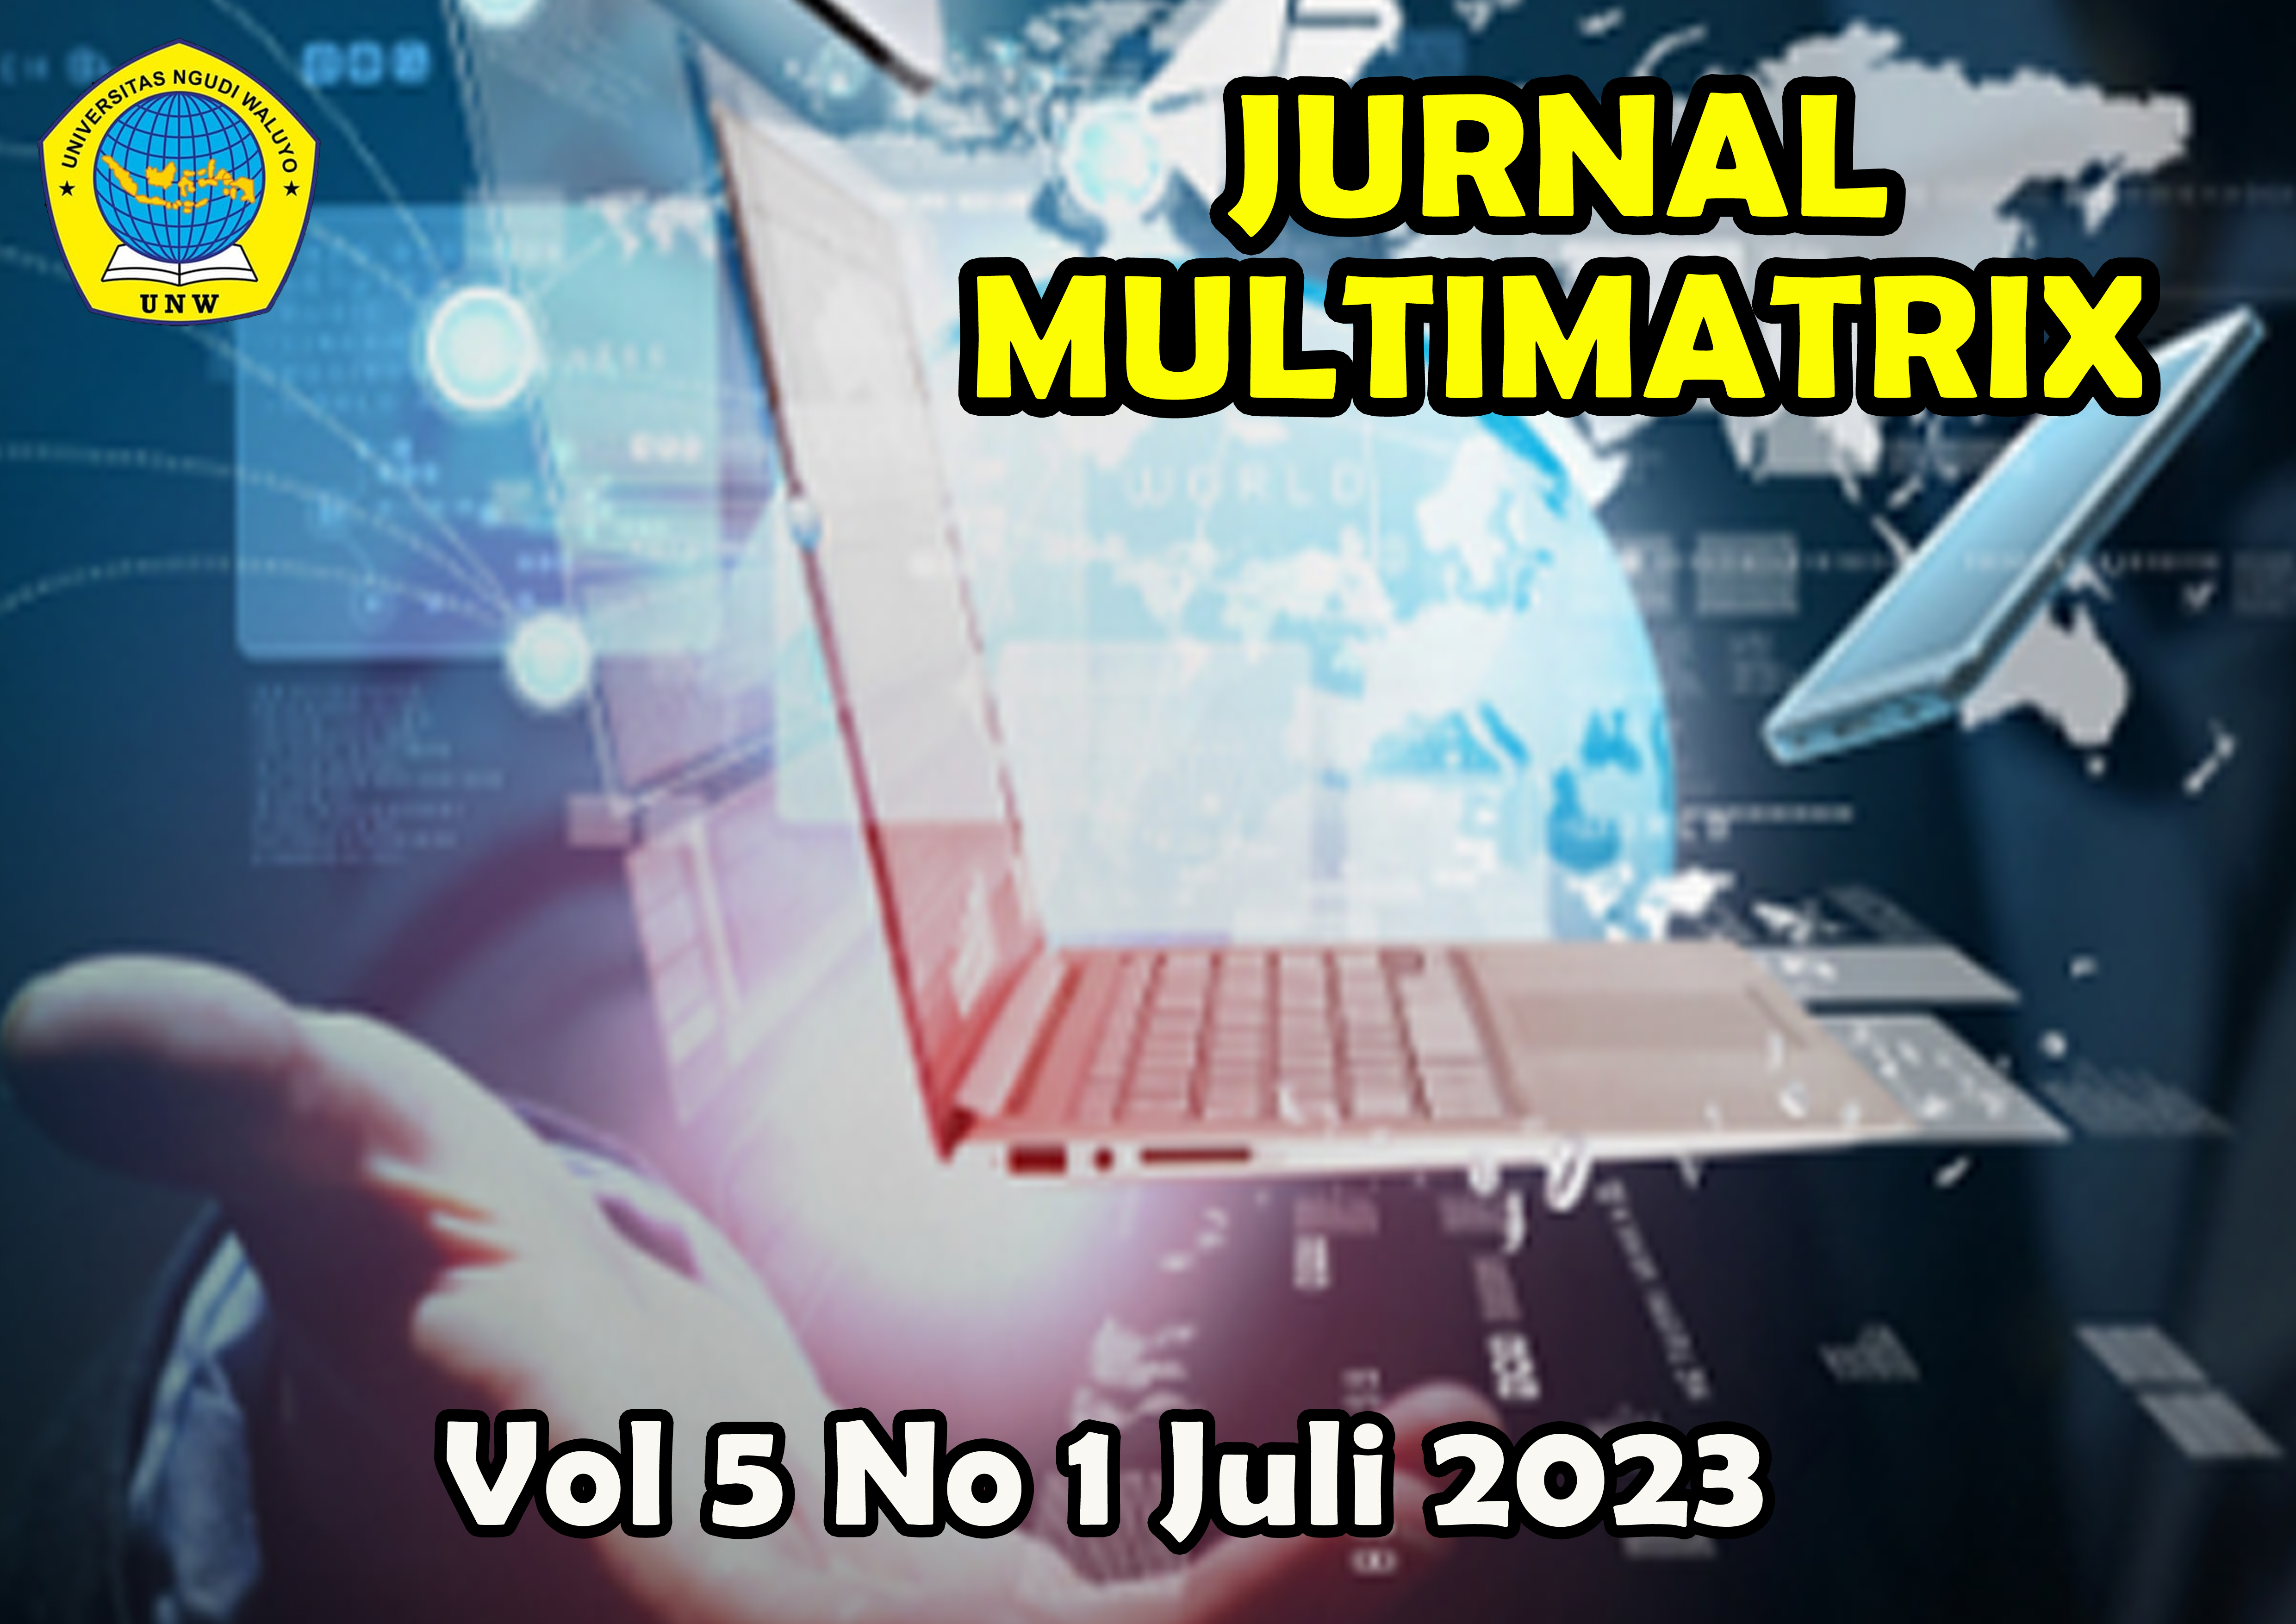 					View Vol. 5 No. 1 (2023): Jurnal Multimatrix Juli 2023
				